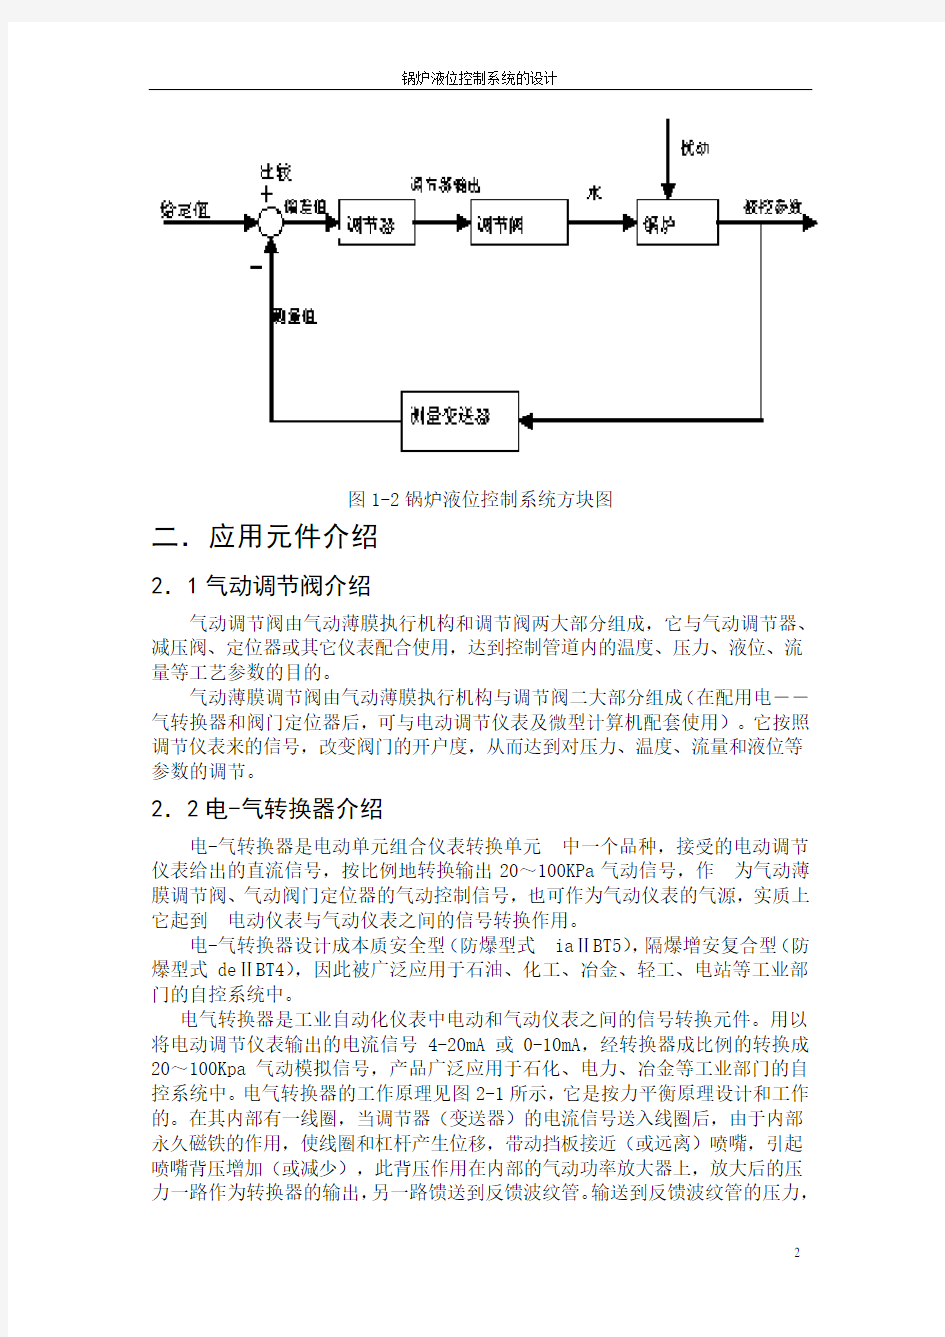 锅炉液位控制系统原理概述